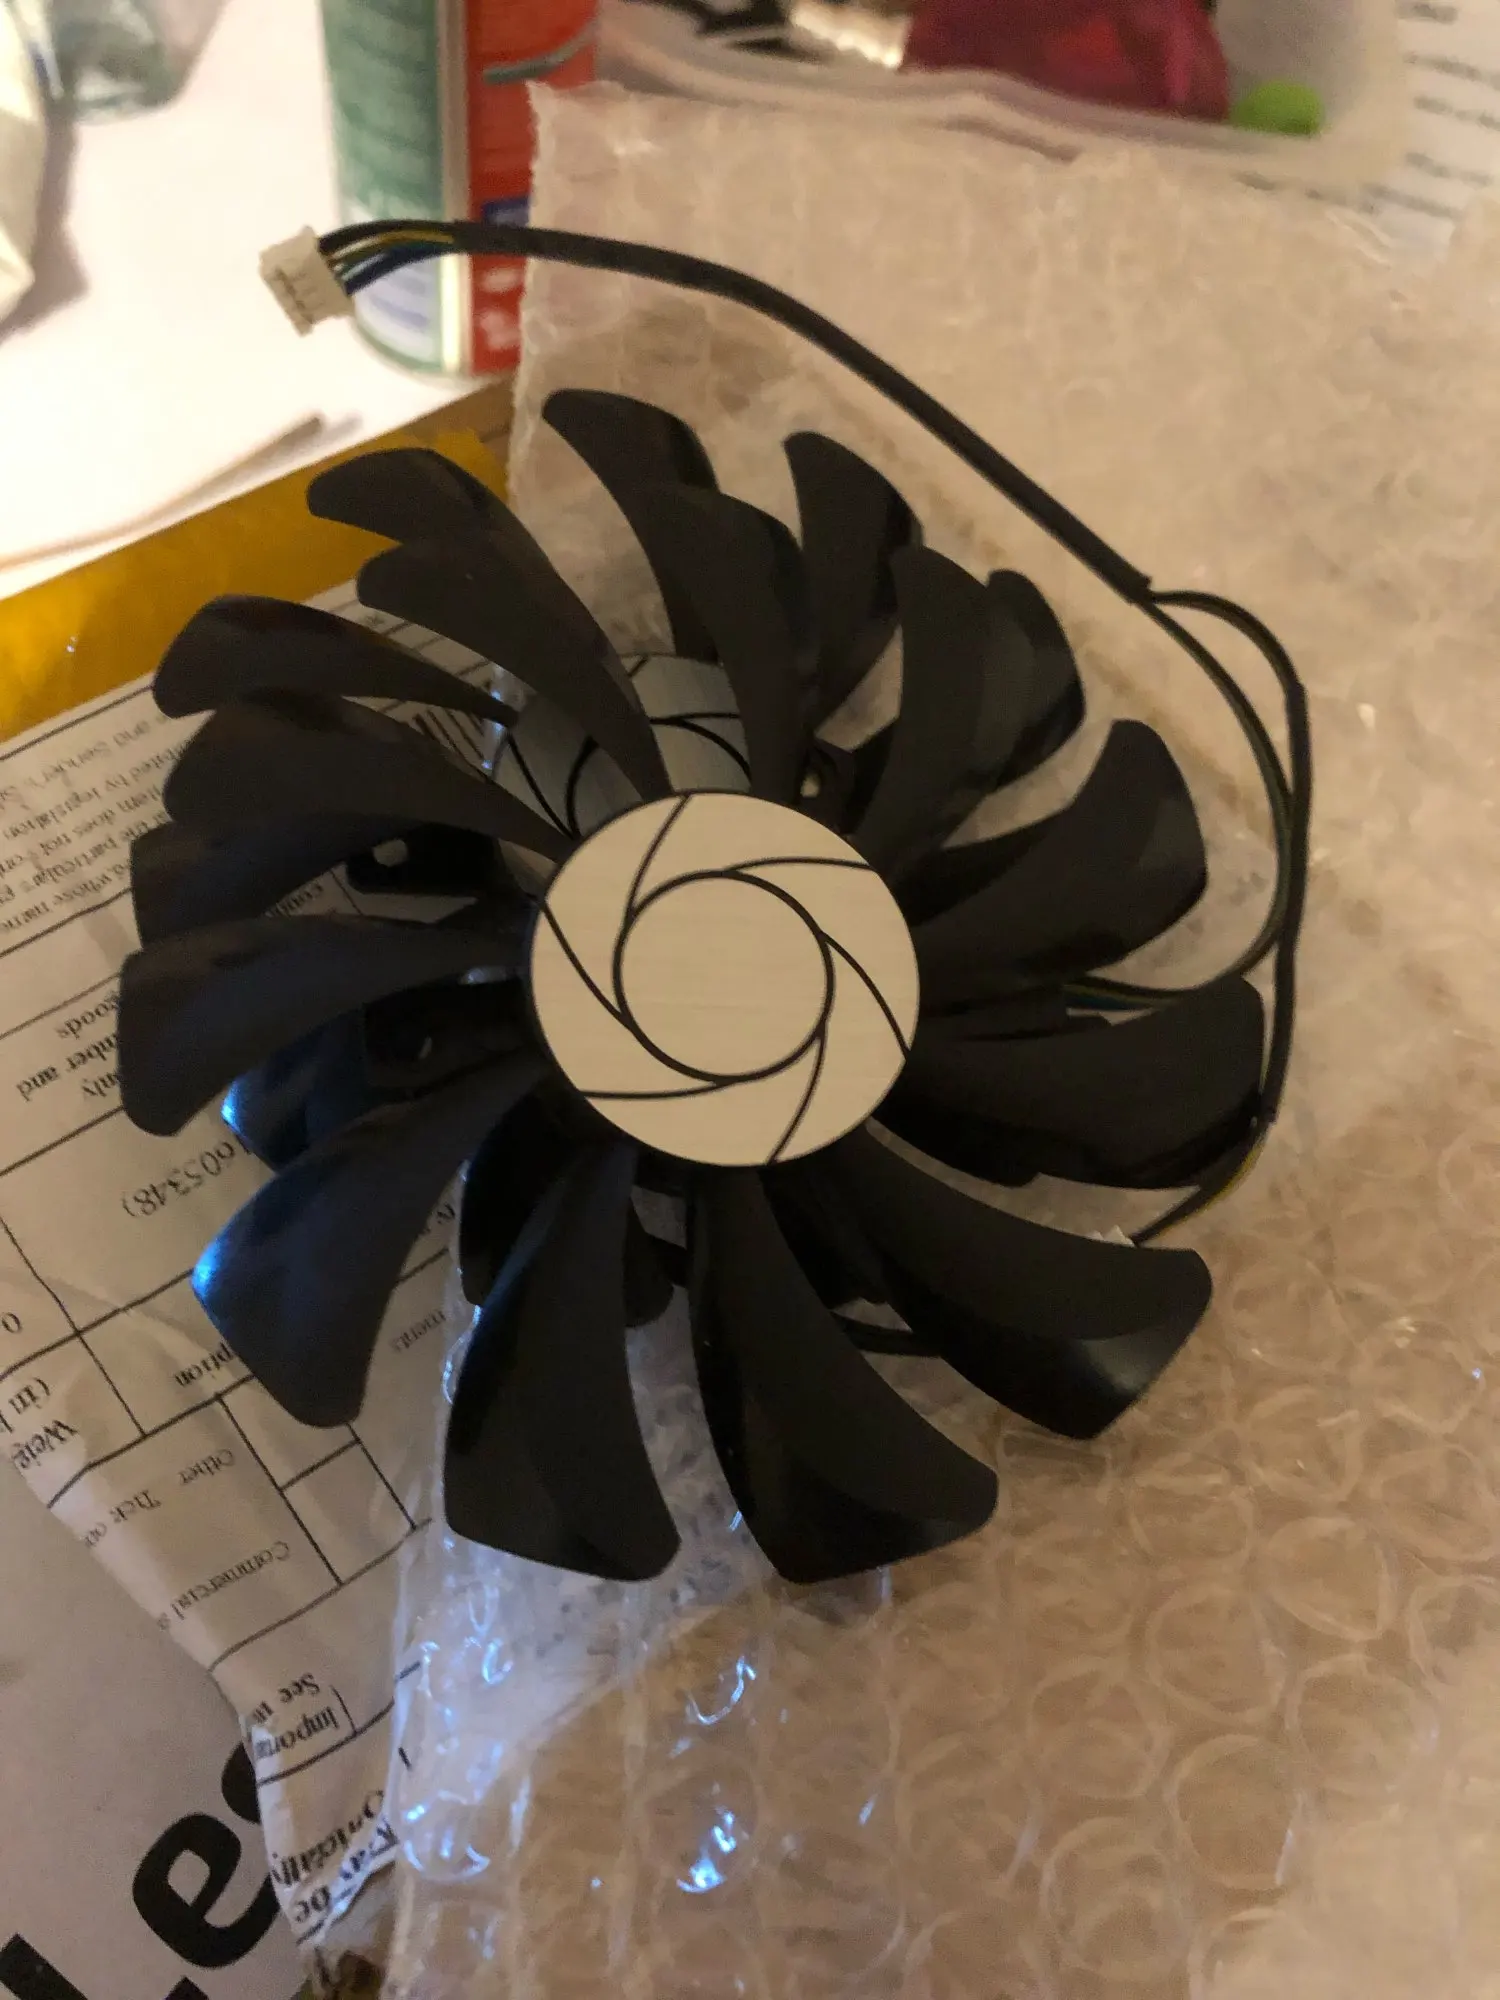 New 85MM HA9010H12F-Z 4Pin Cooler Fan Replacement For MSI GTX 1060 OC 6G GTX 960 P106-100 P106 GTX1060 GTX960 Graphics Card Fan